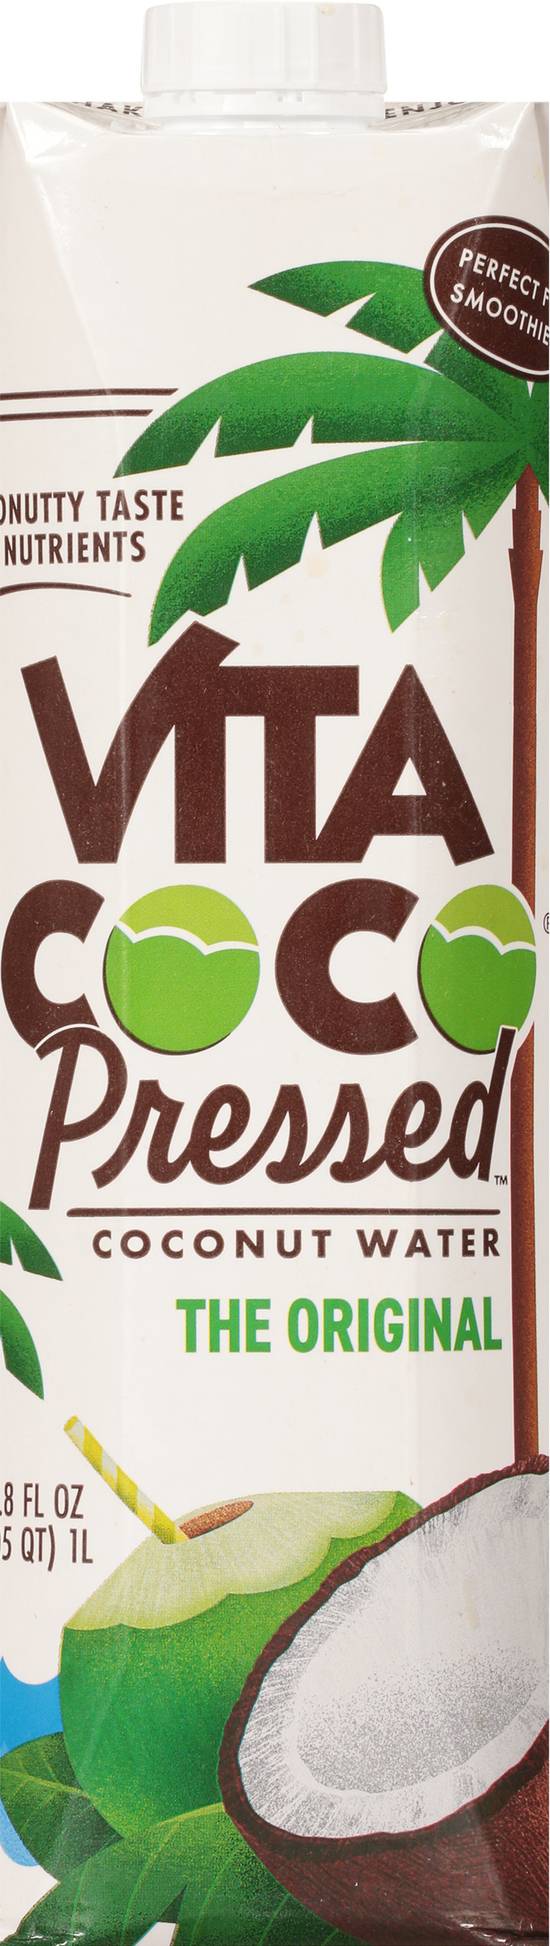 Vita Coco Pressed the Original Coconut Water (33.8 fl oz)